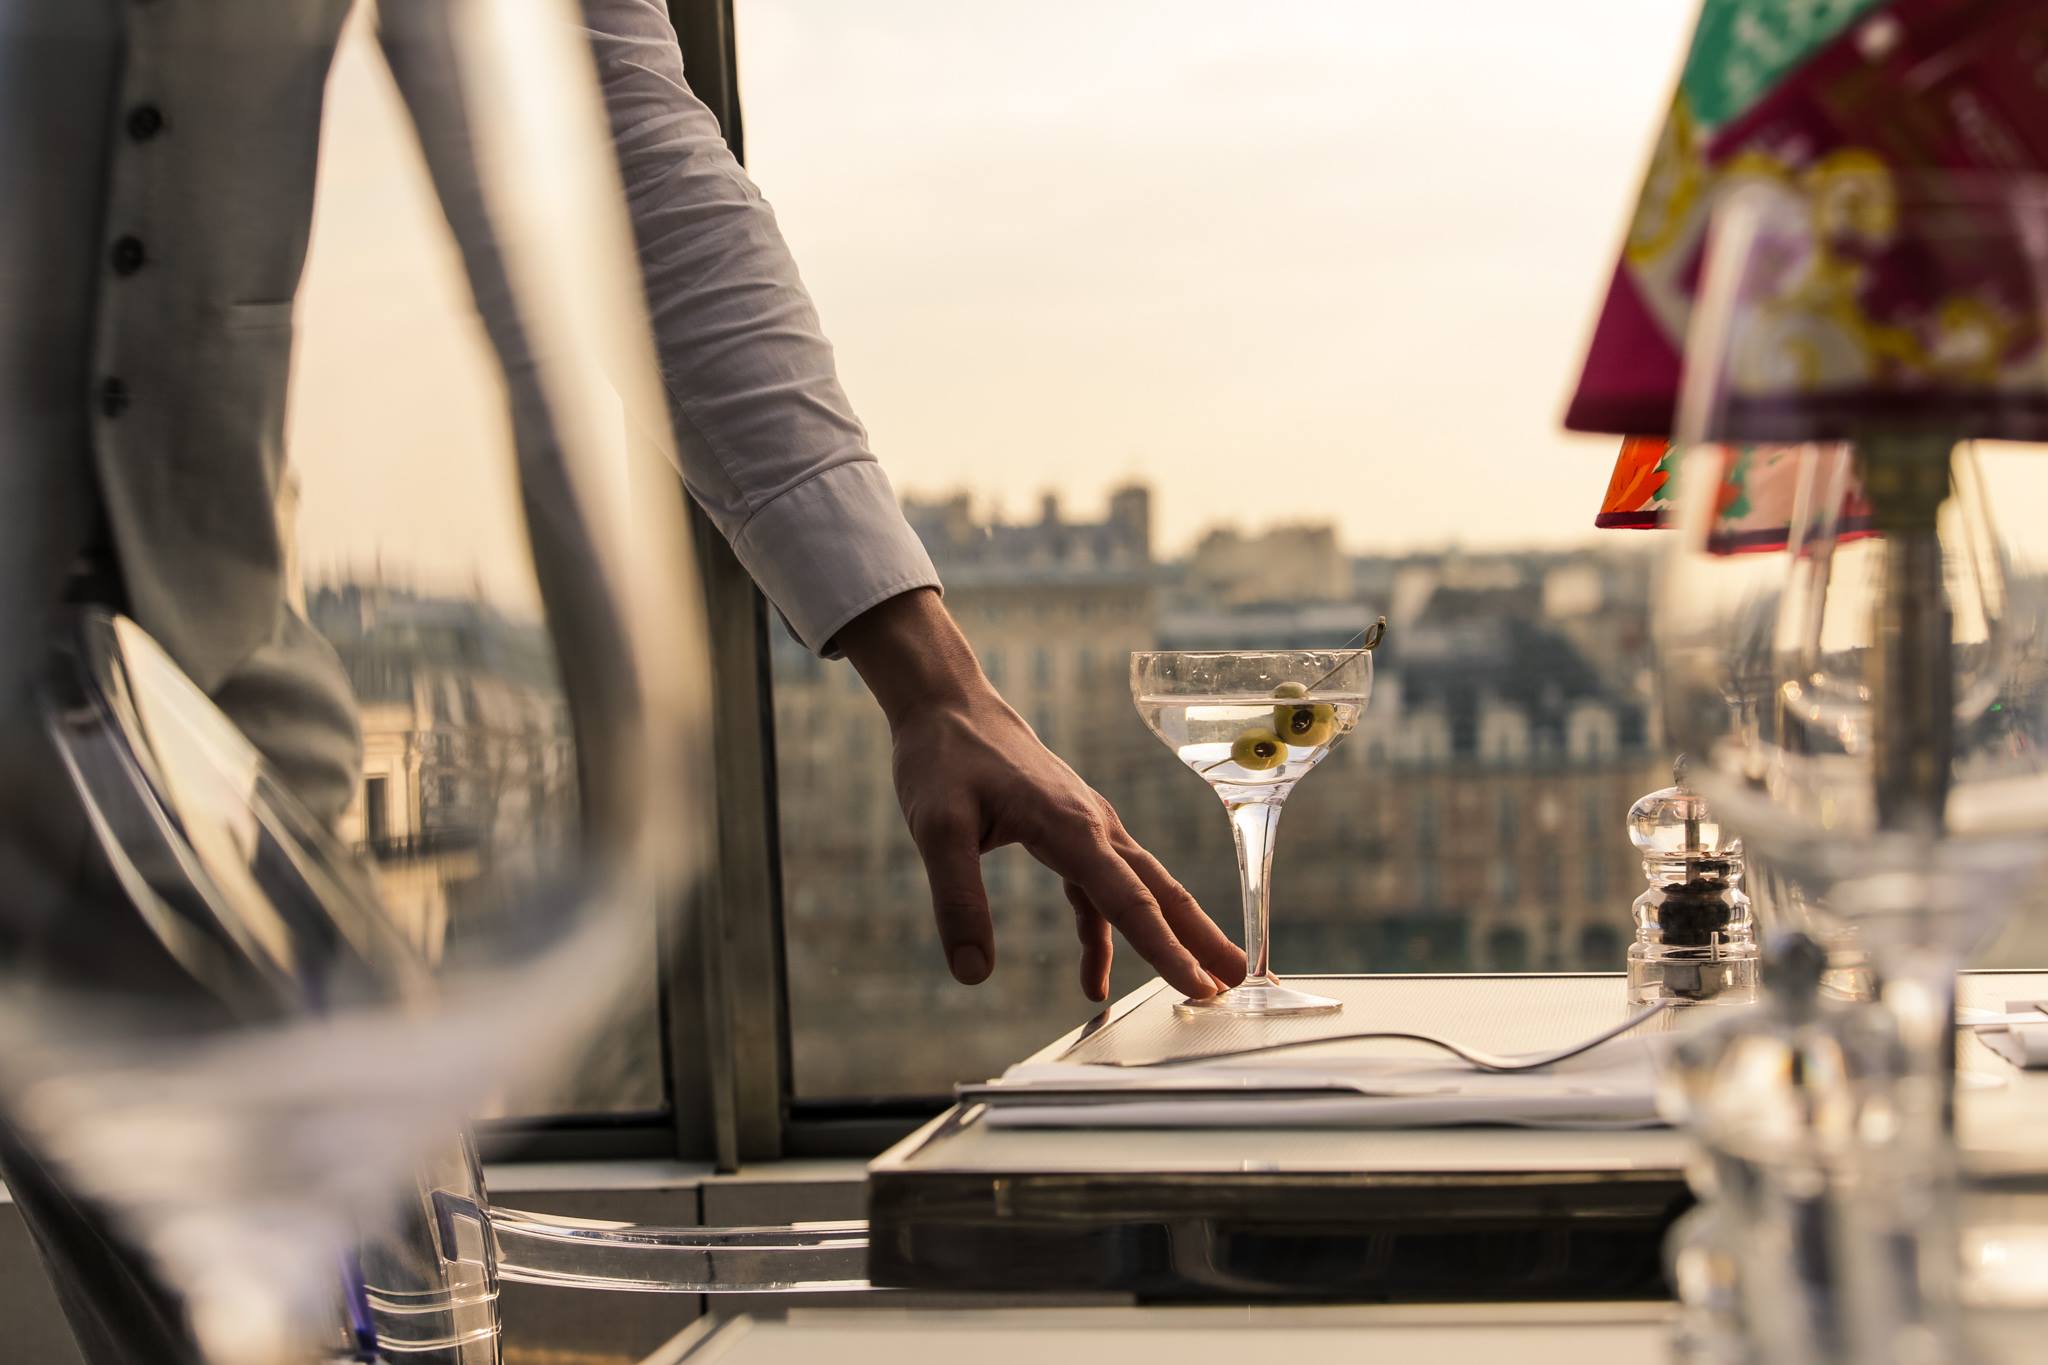 20 Best Rooftop Bars In Paris